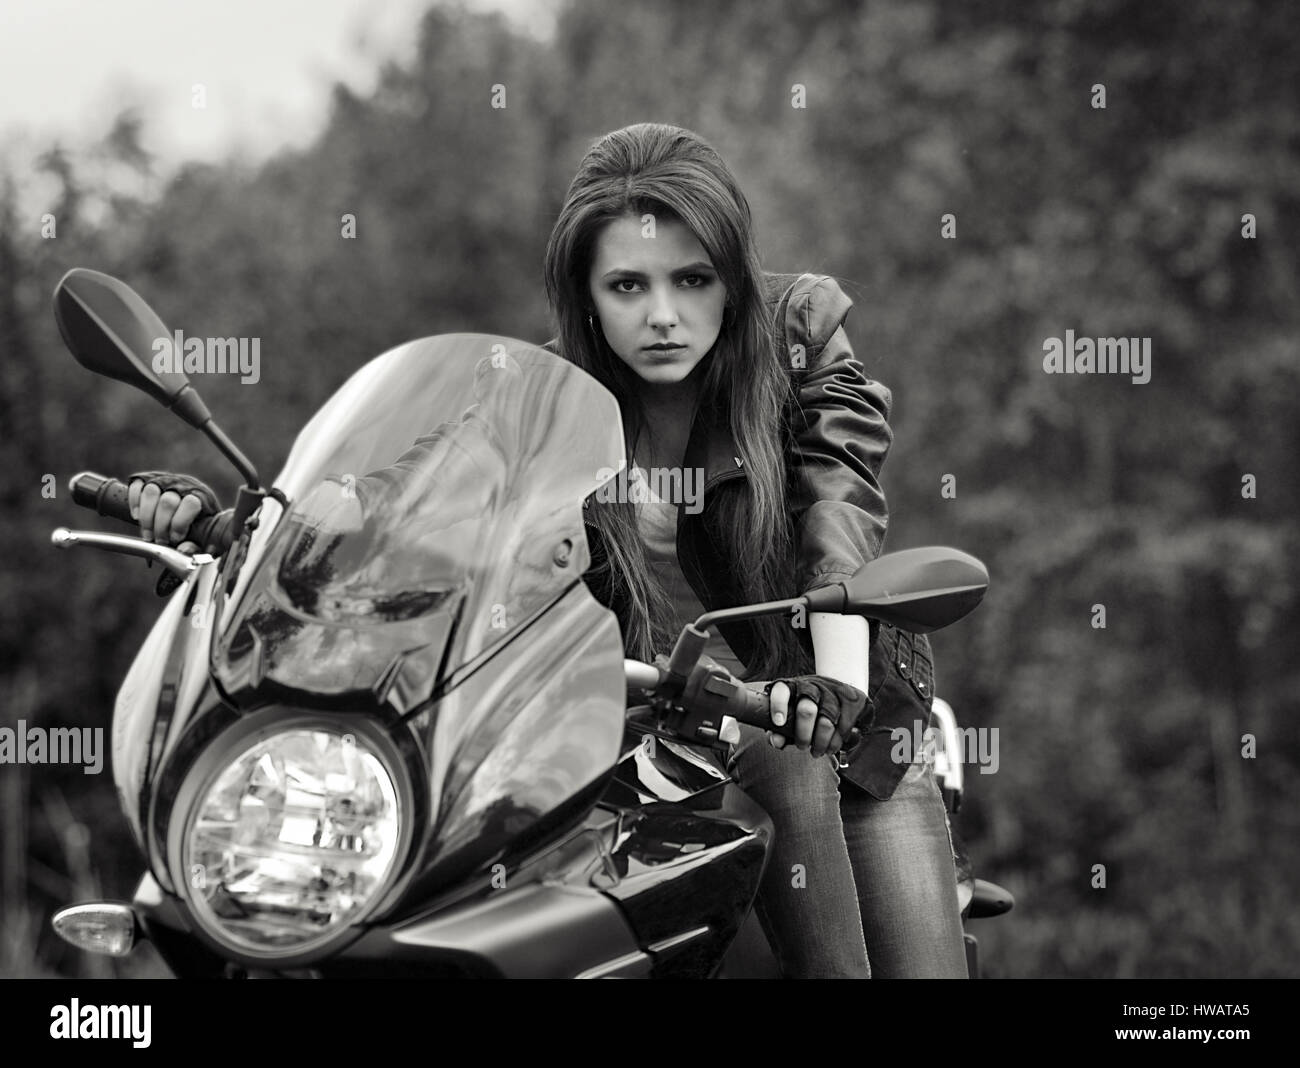 Moto Girl  Girl riding motorcycle, Bike photoshoot, Biker photoshoot